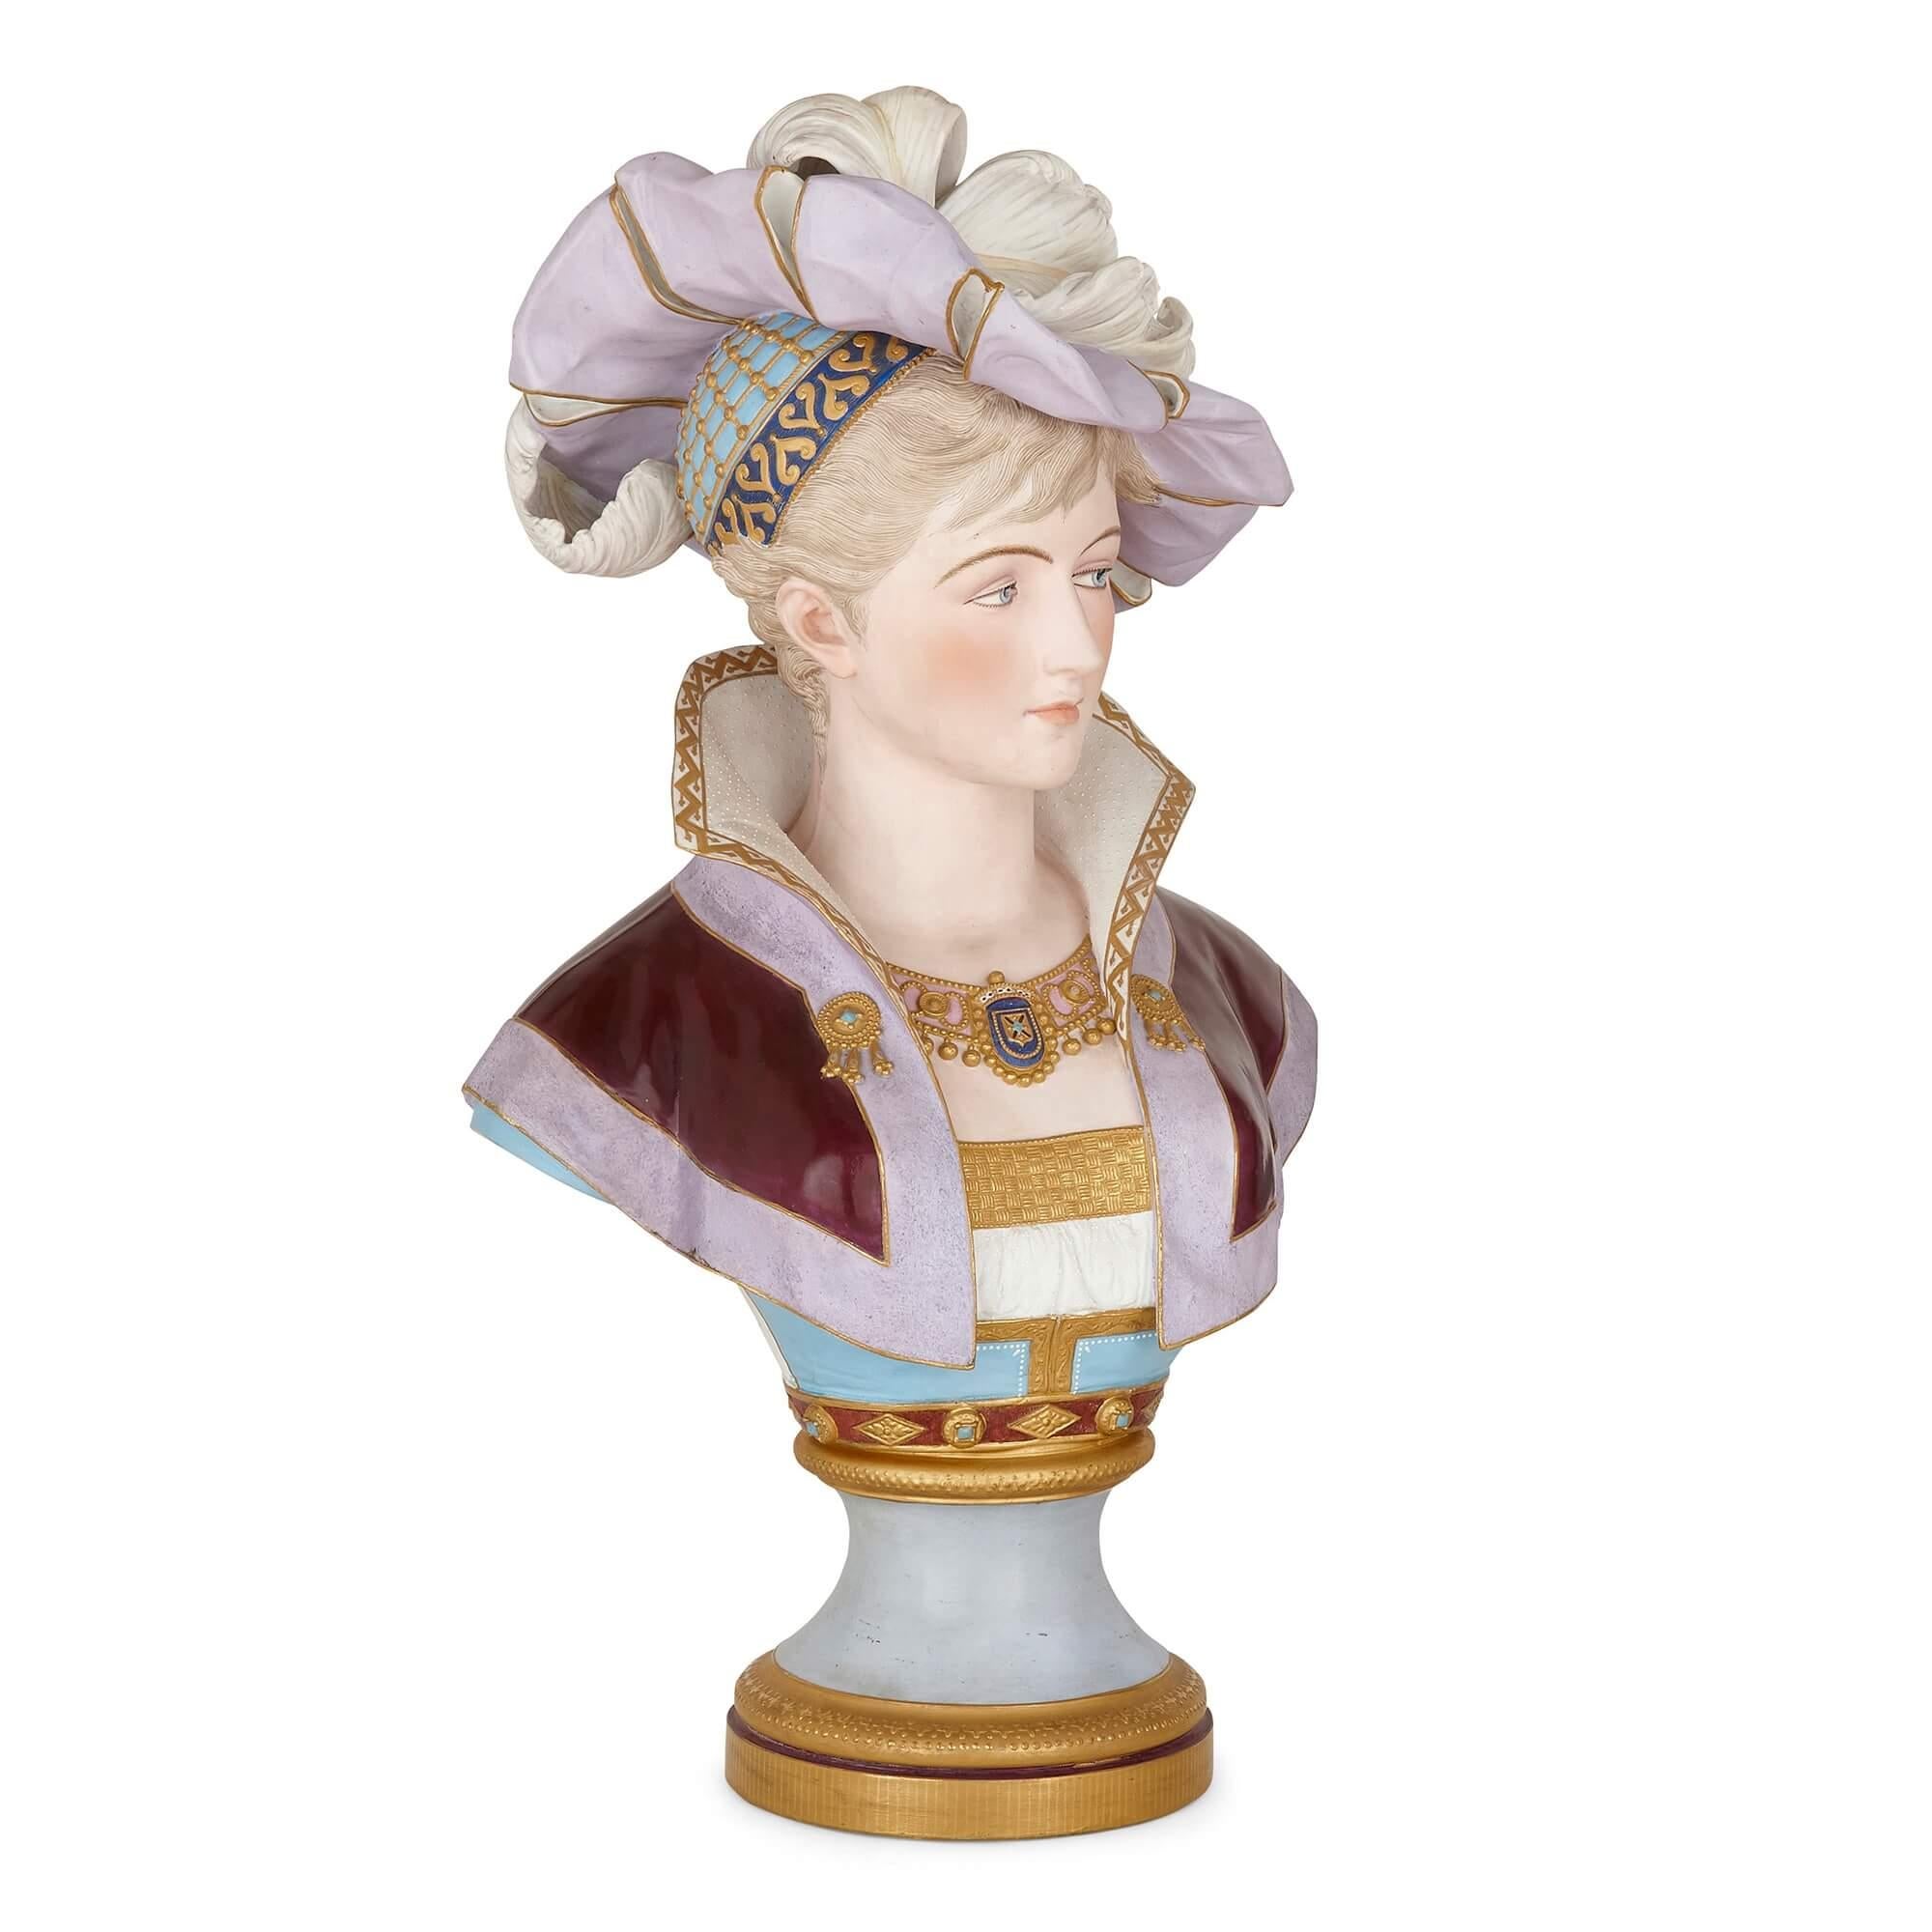 Buste de femme en biscuit de porcelaine peint en France
Français, 19ème siècle
Mesures : Hauteur 68 cm, largeur 40 cm, profondeur 30 cm

Ce buste raffiné est fabriqué en porcelaine biscuit peinte. Le buste représente une jeune femme dans un